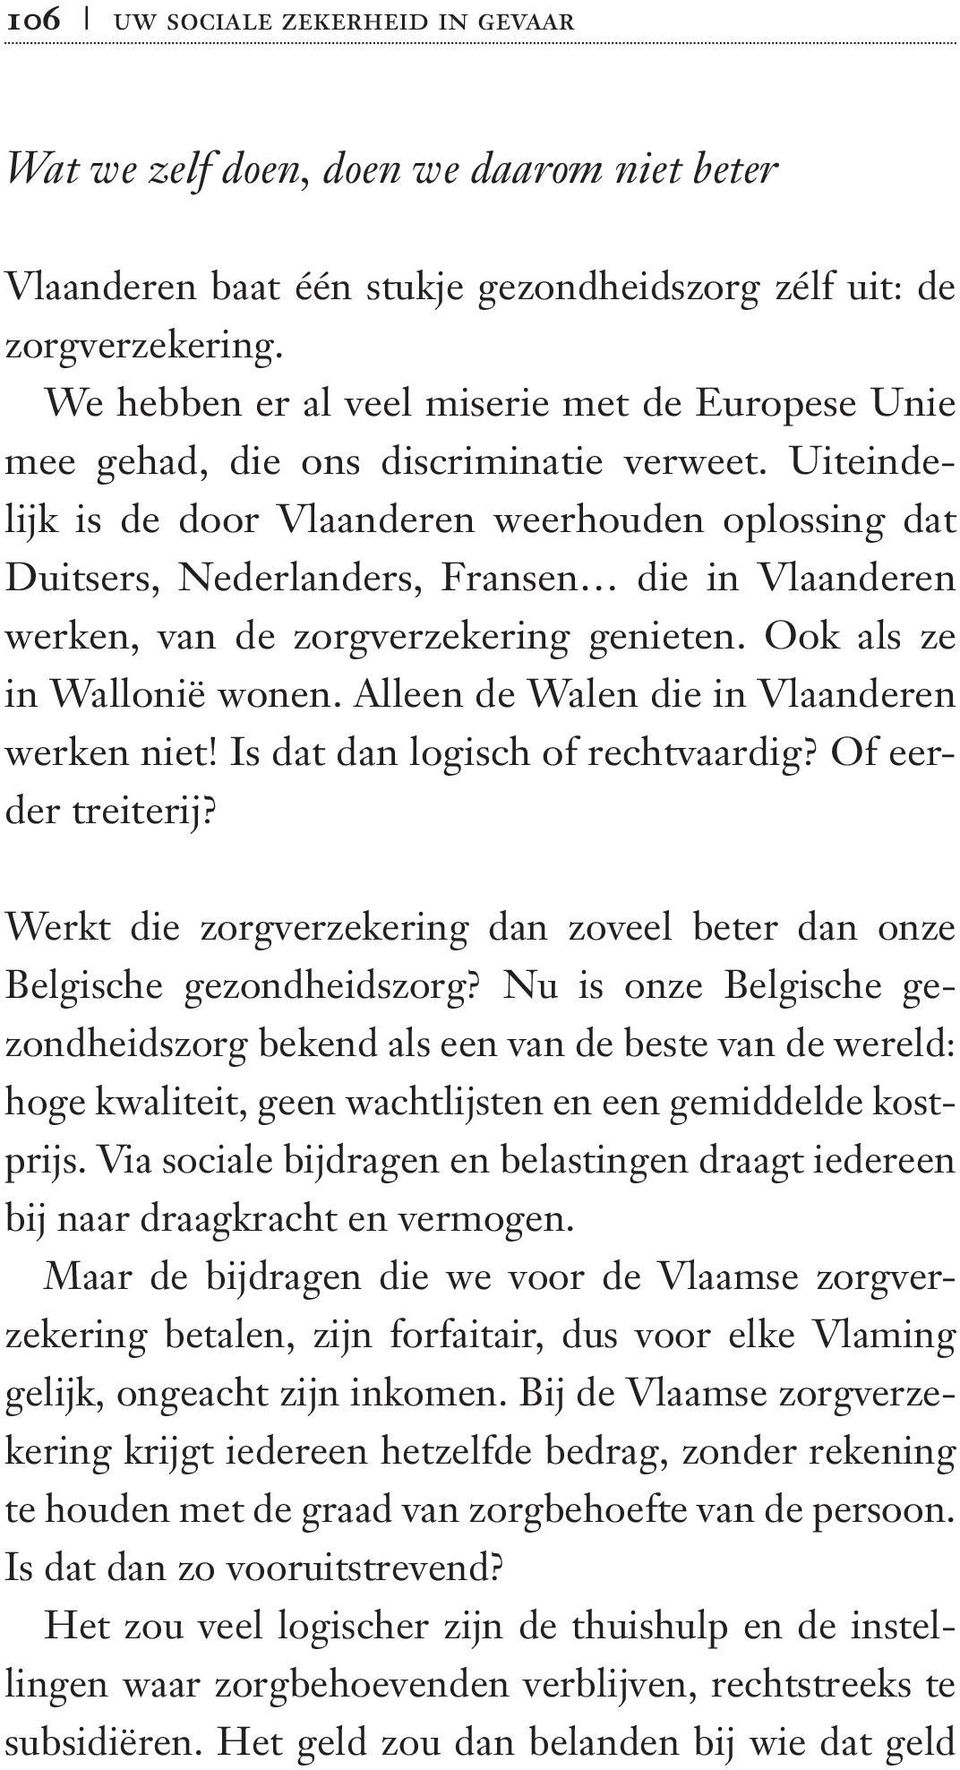 Uiteindelijk is de door Vlaanderen weerhouden oplossing dat Duitsers, Nederlanders, Fransen die in Vlaanderen werken, van de zorgverzekering genieten. Ook als ze in Wallonië wonen.